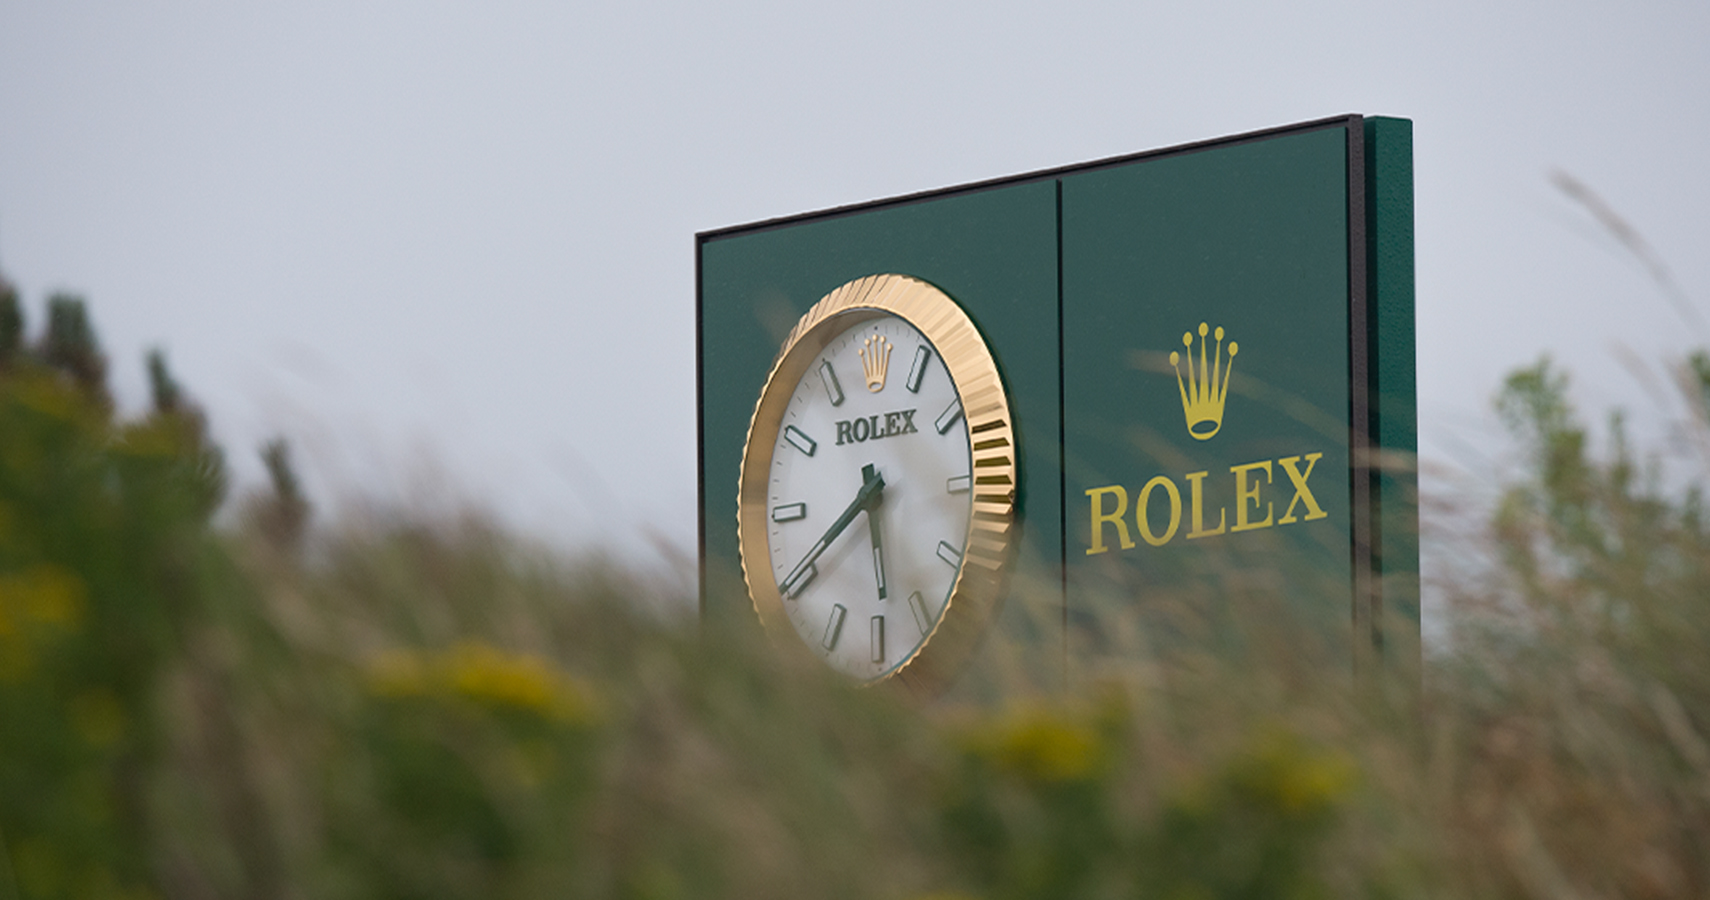 Rolex, Reloj Oficial y socio principal de eventos deportivos destacados.